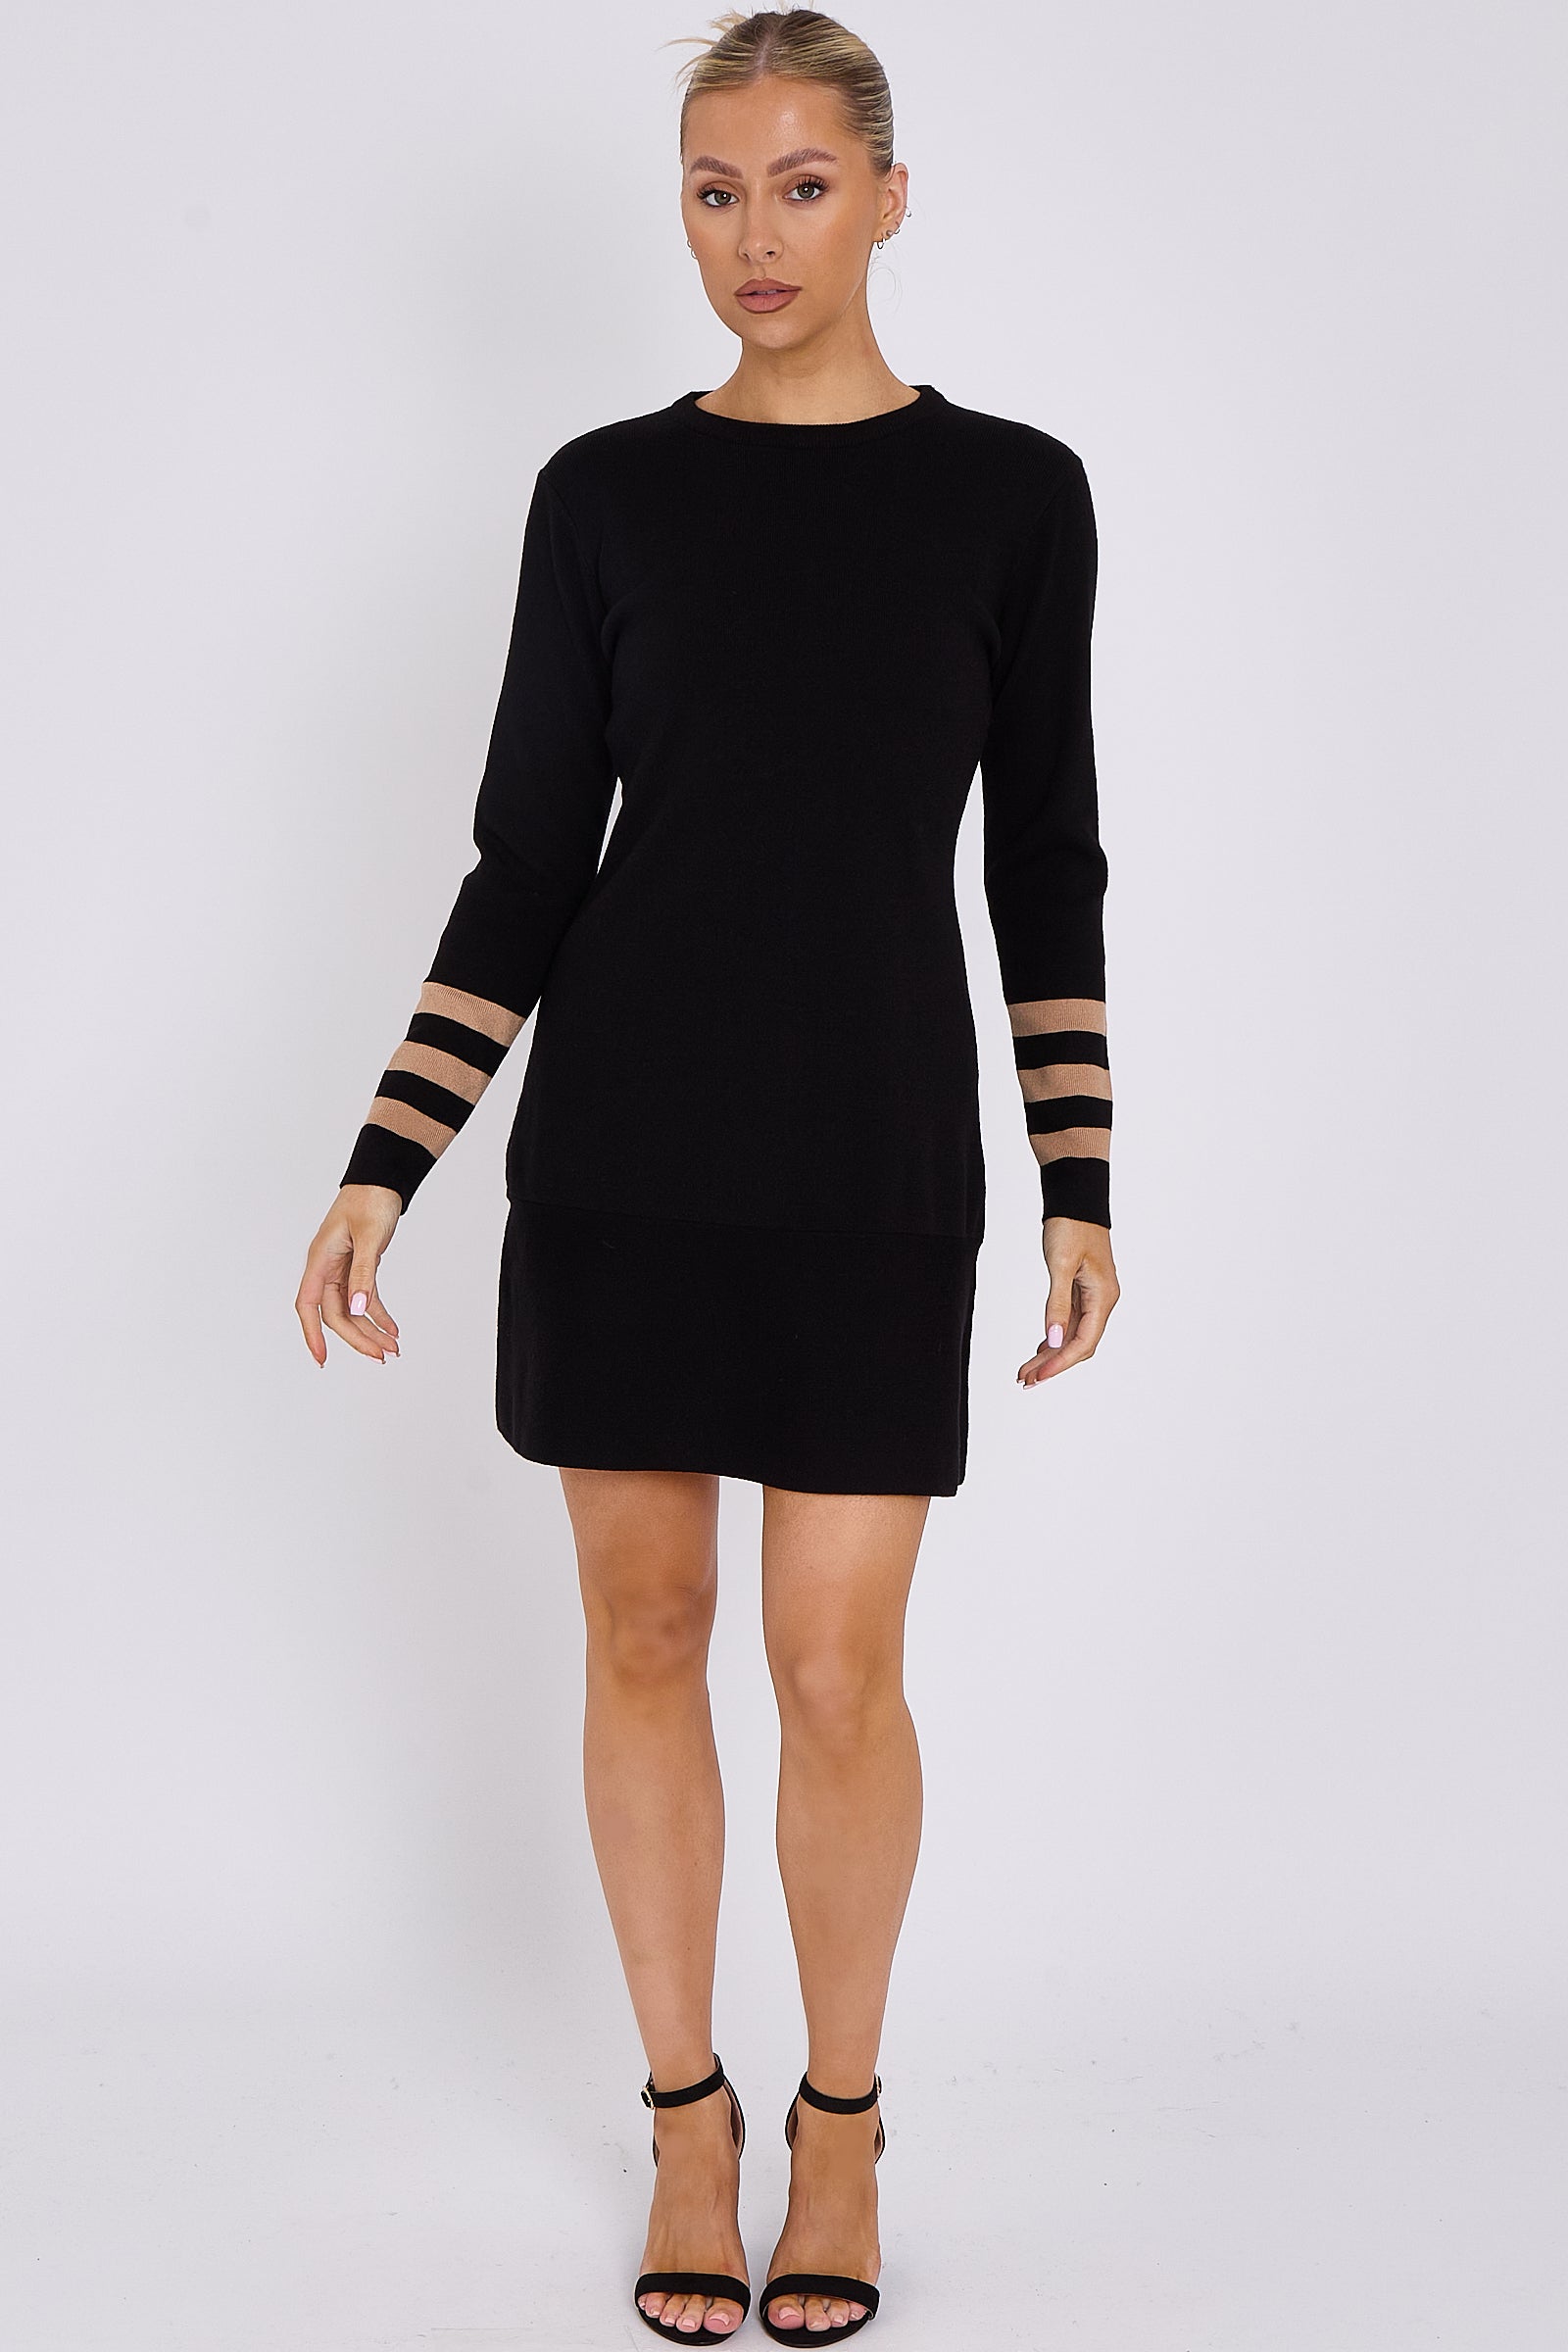 Black Knit Mini Dress